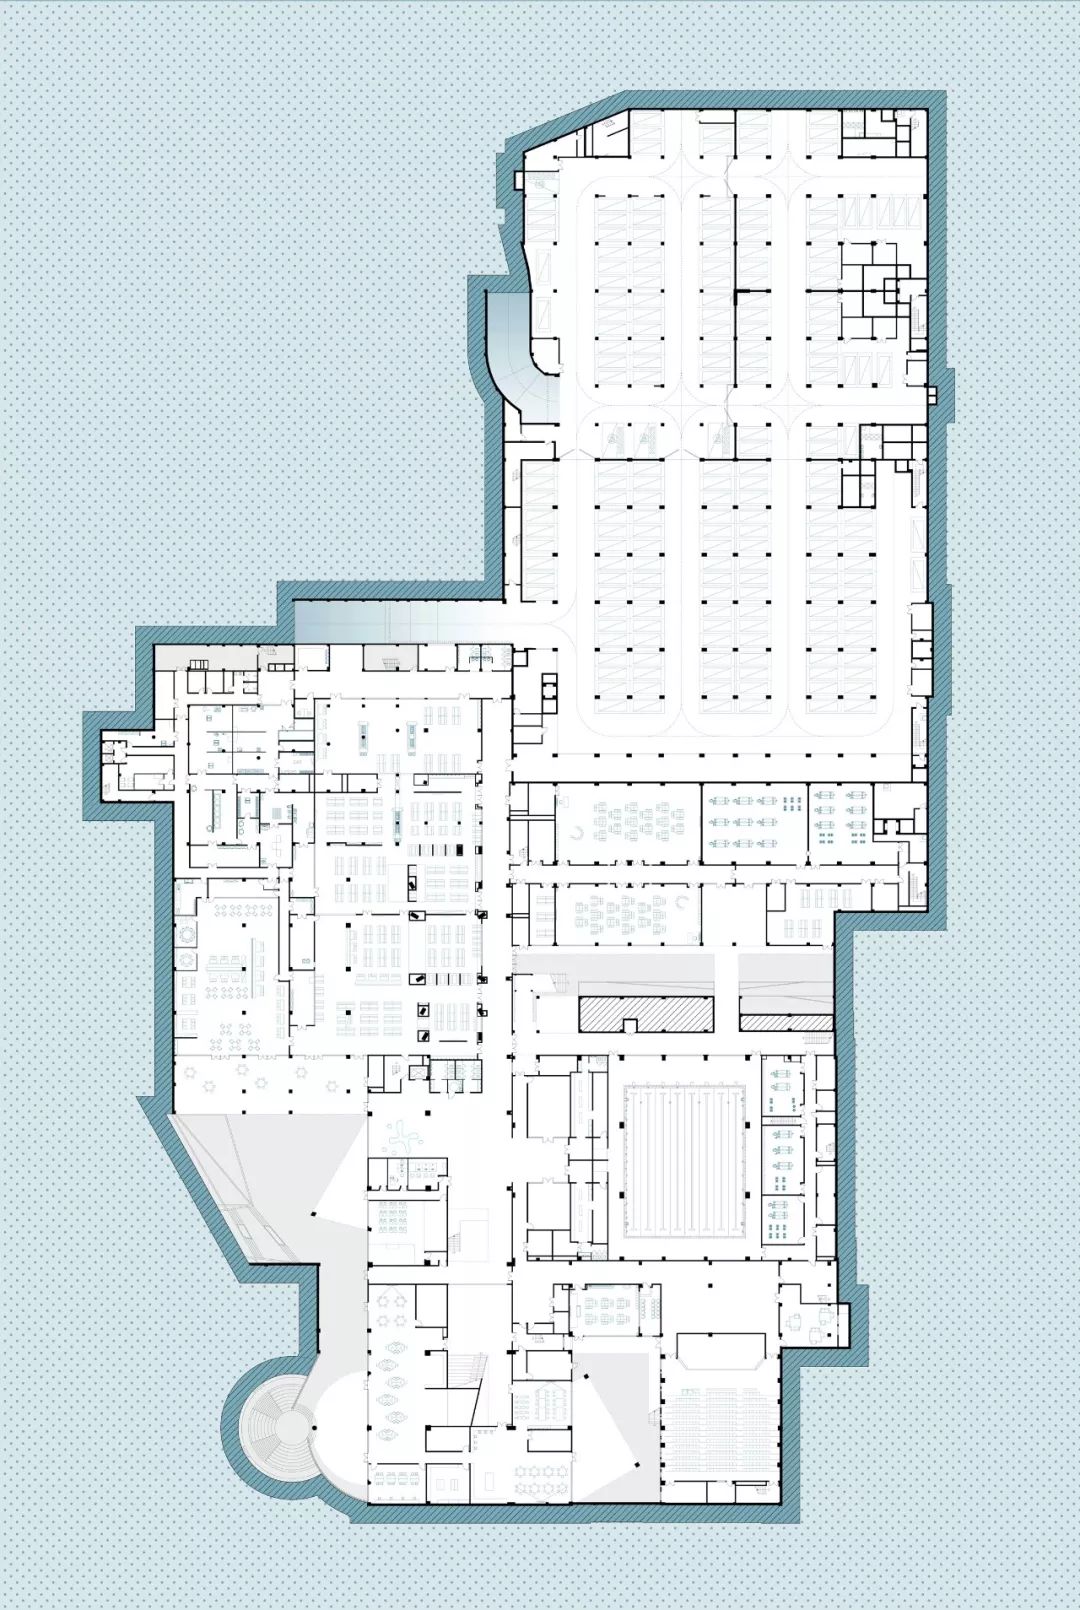 杭州市崇文世纪城实验学校  建筑设计  /  度向建筑